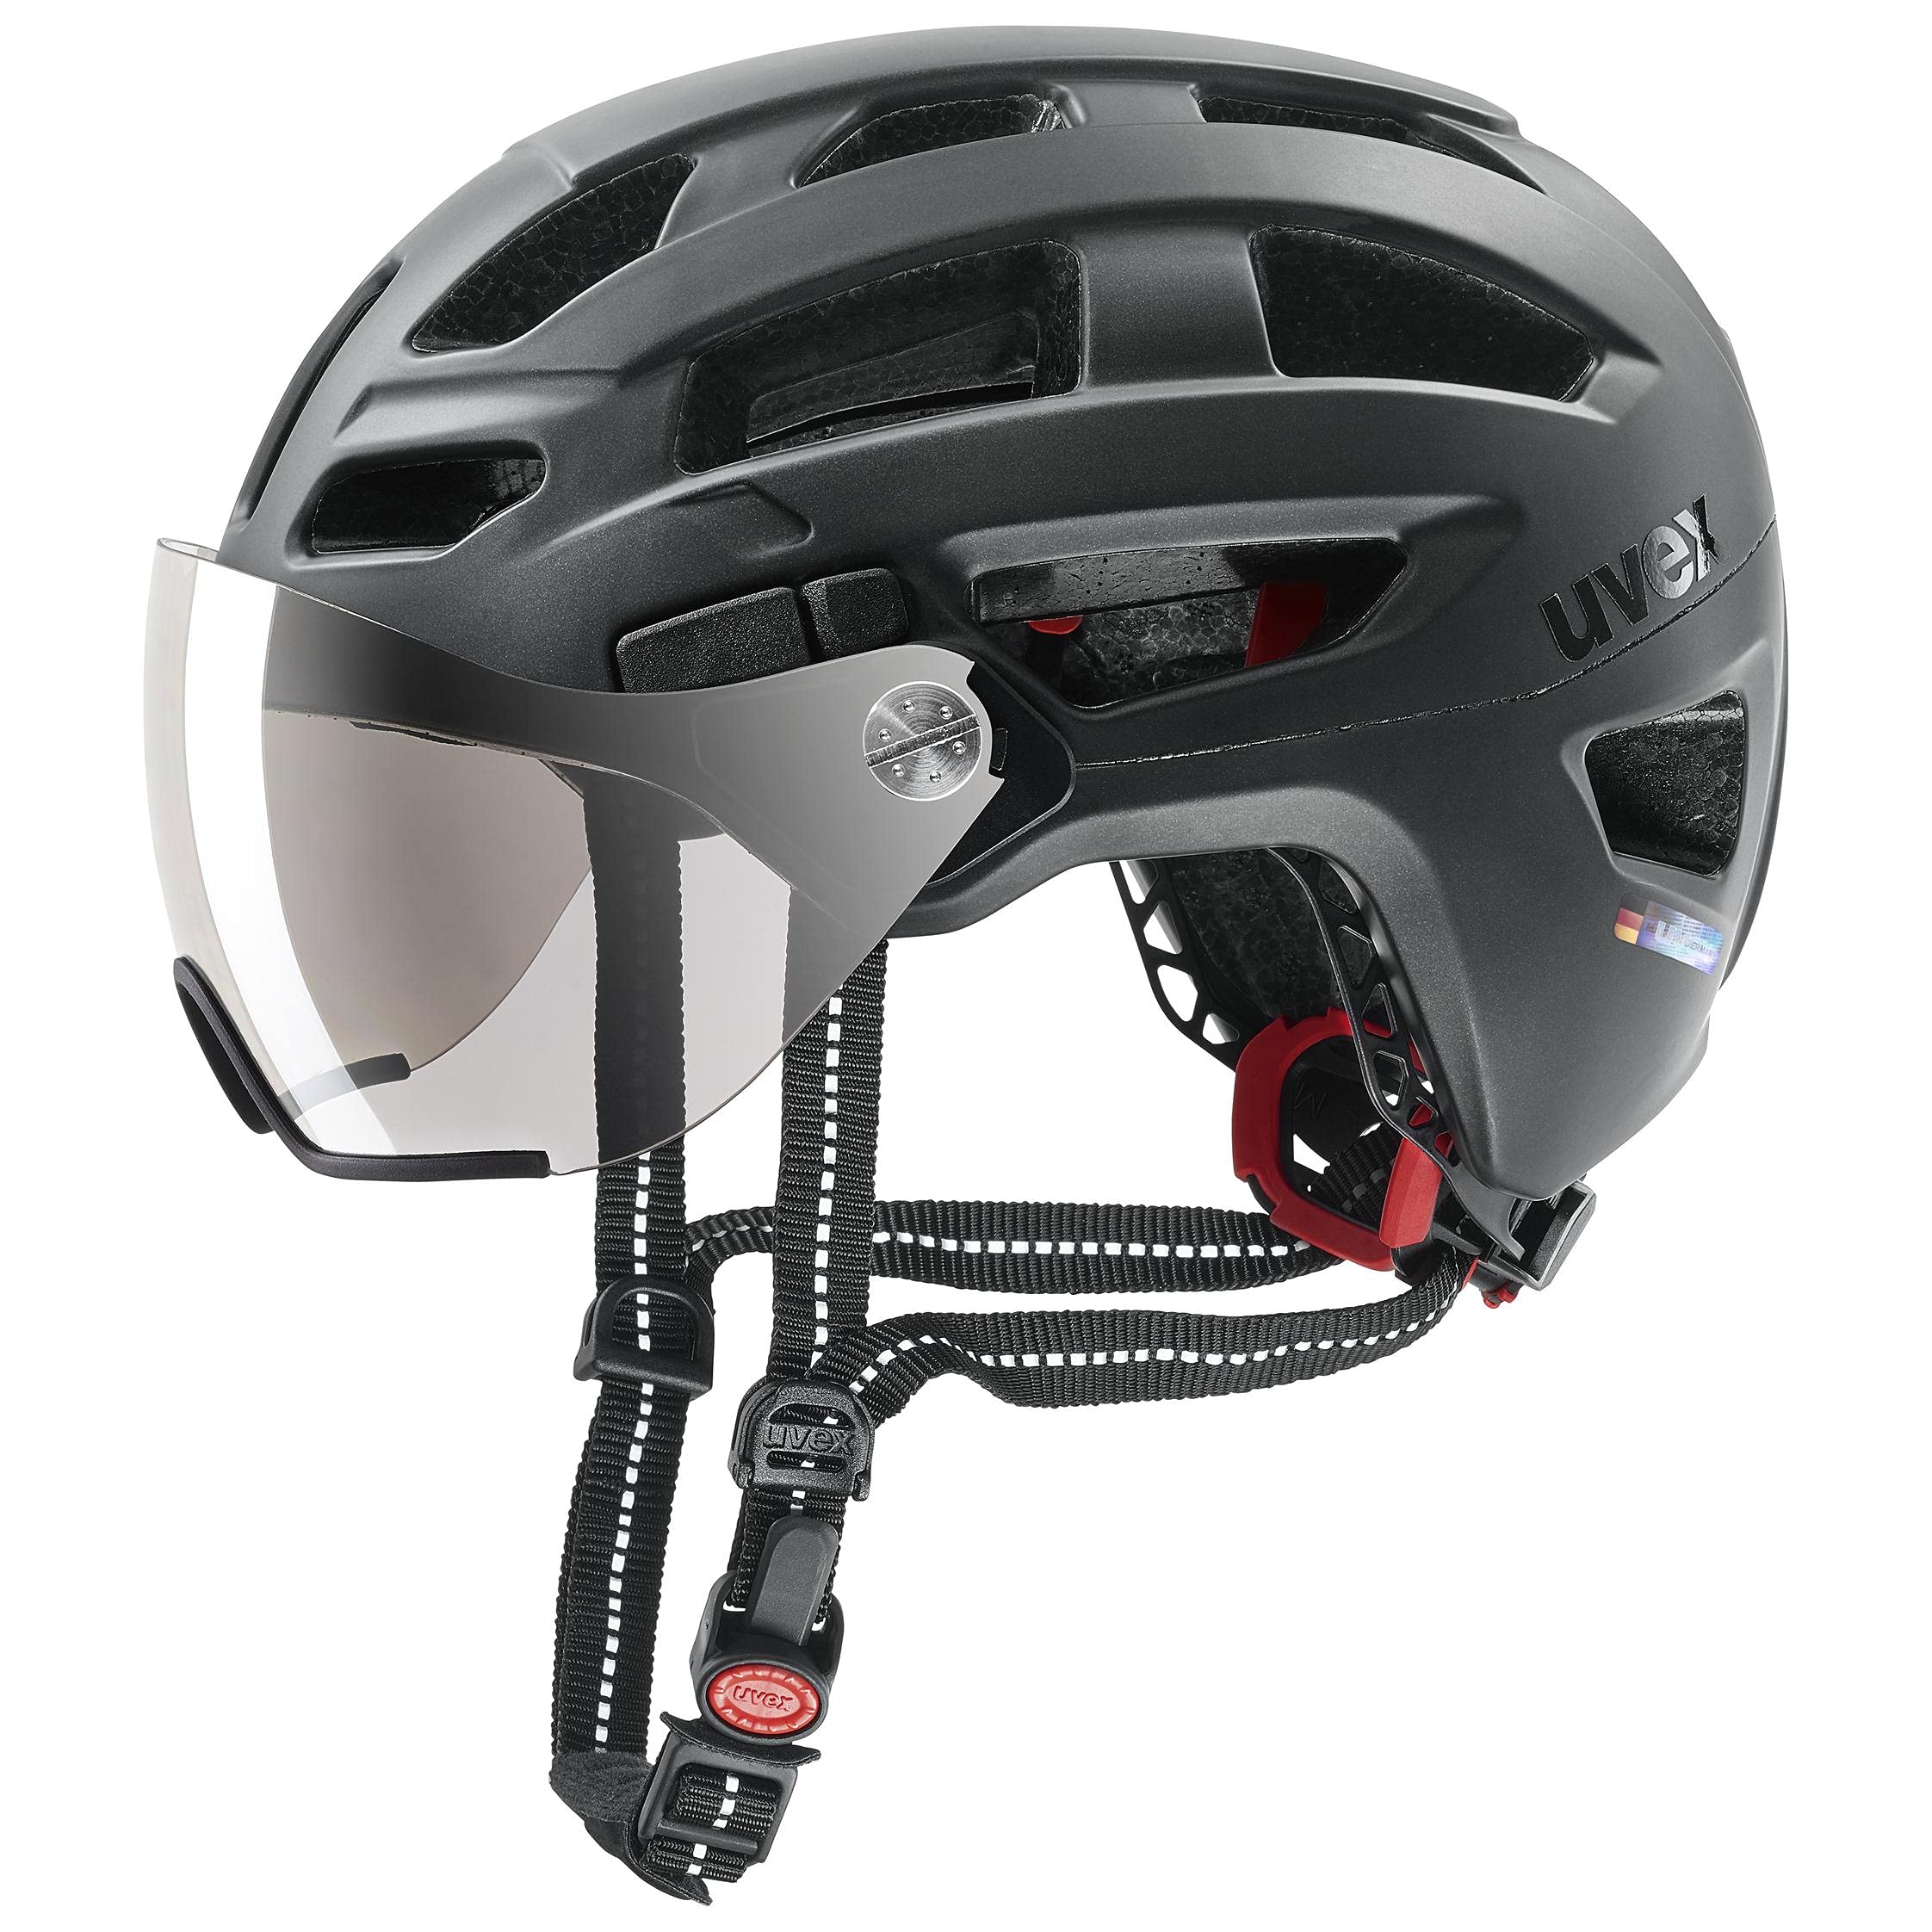 uvex finale visor - sicherer City-Helm für Damen und Herren - mit Visier - inkl. LED-Licht - black matt - 52-57 cm